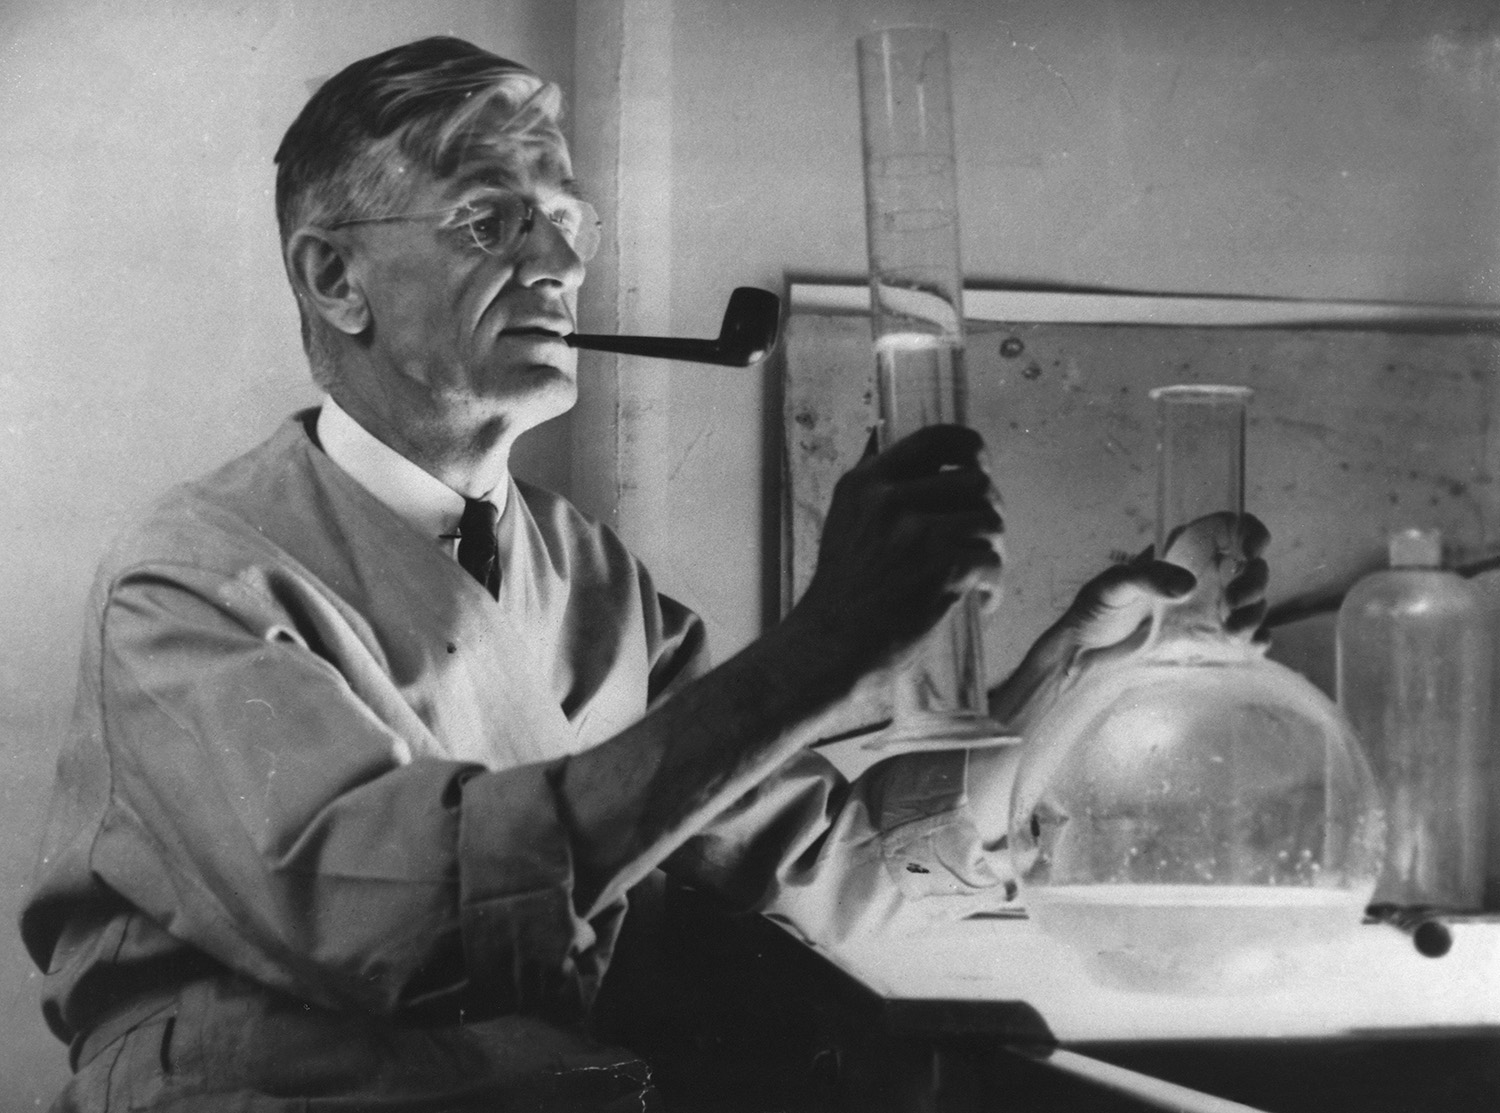 El inventor estadounidense Vannevar Bush alrededor de 1943